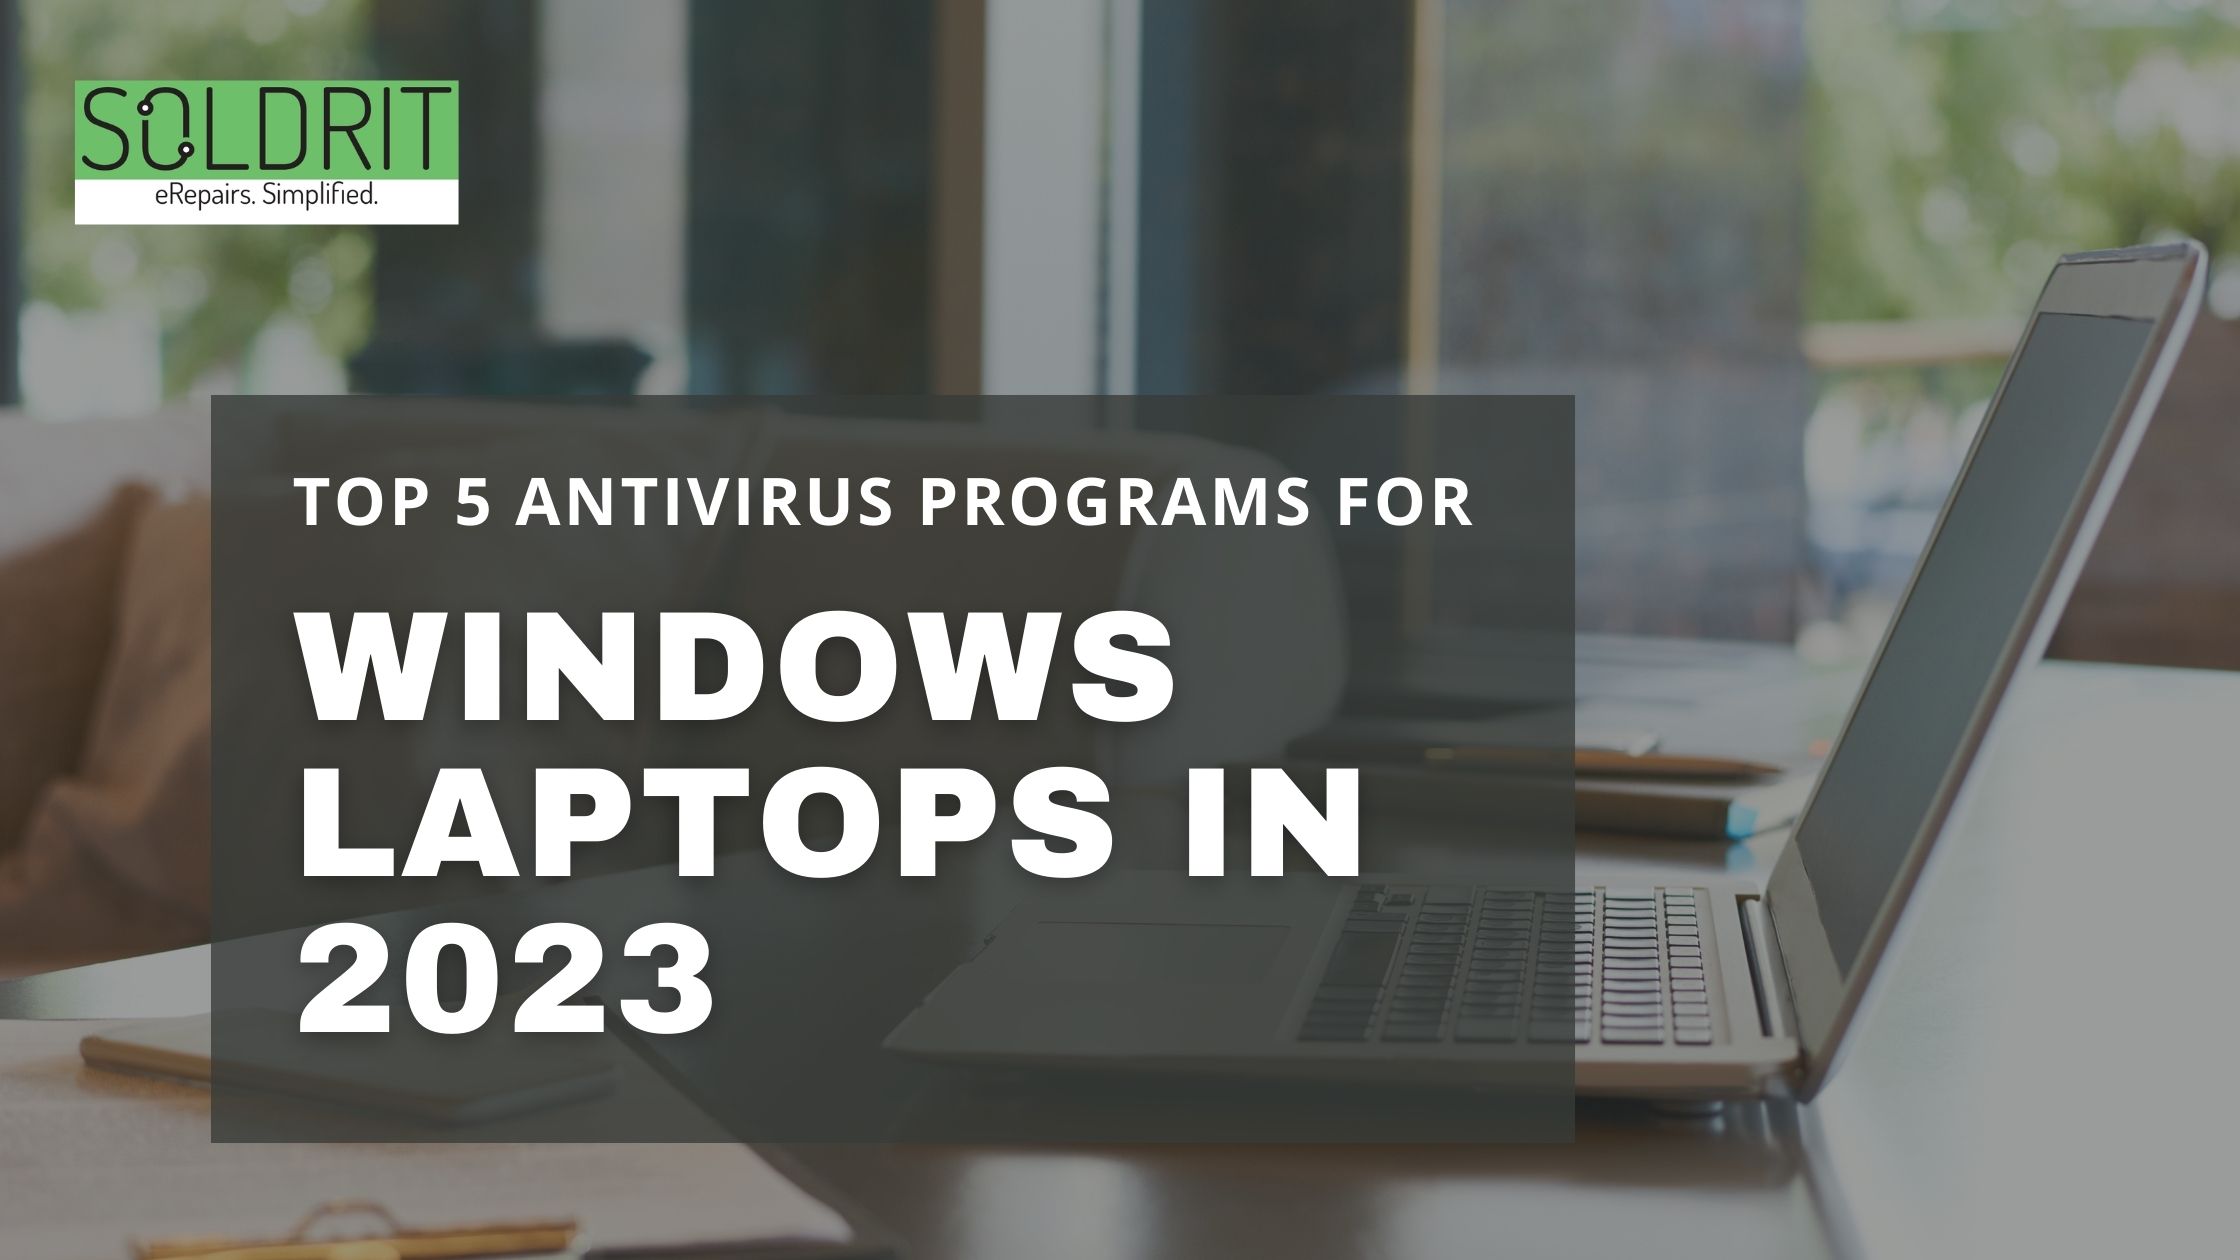 Top 5 Antivirus Programs For Windows Laptops in 2023